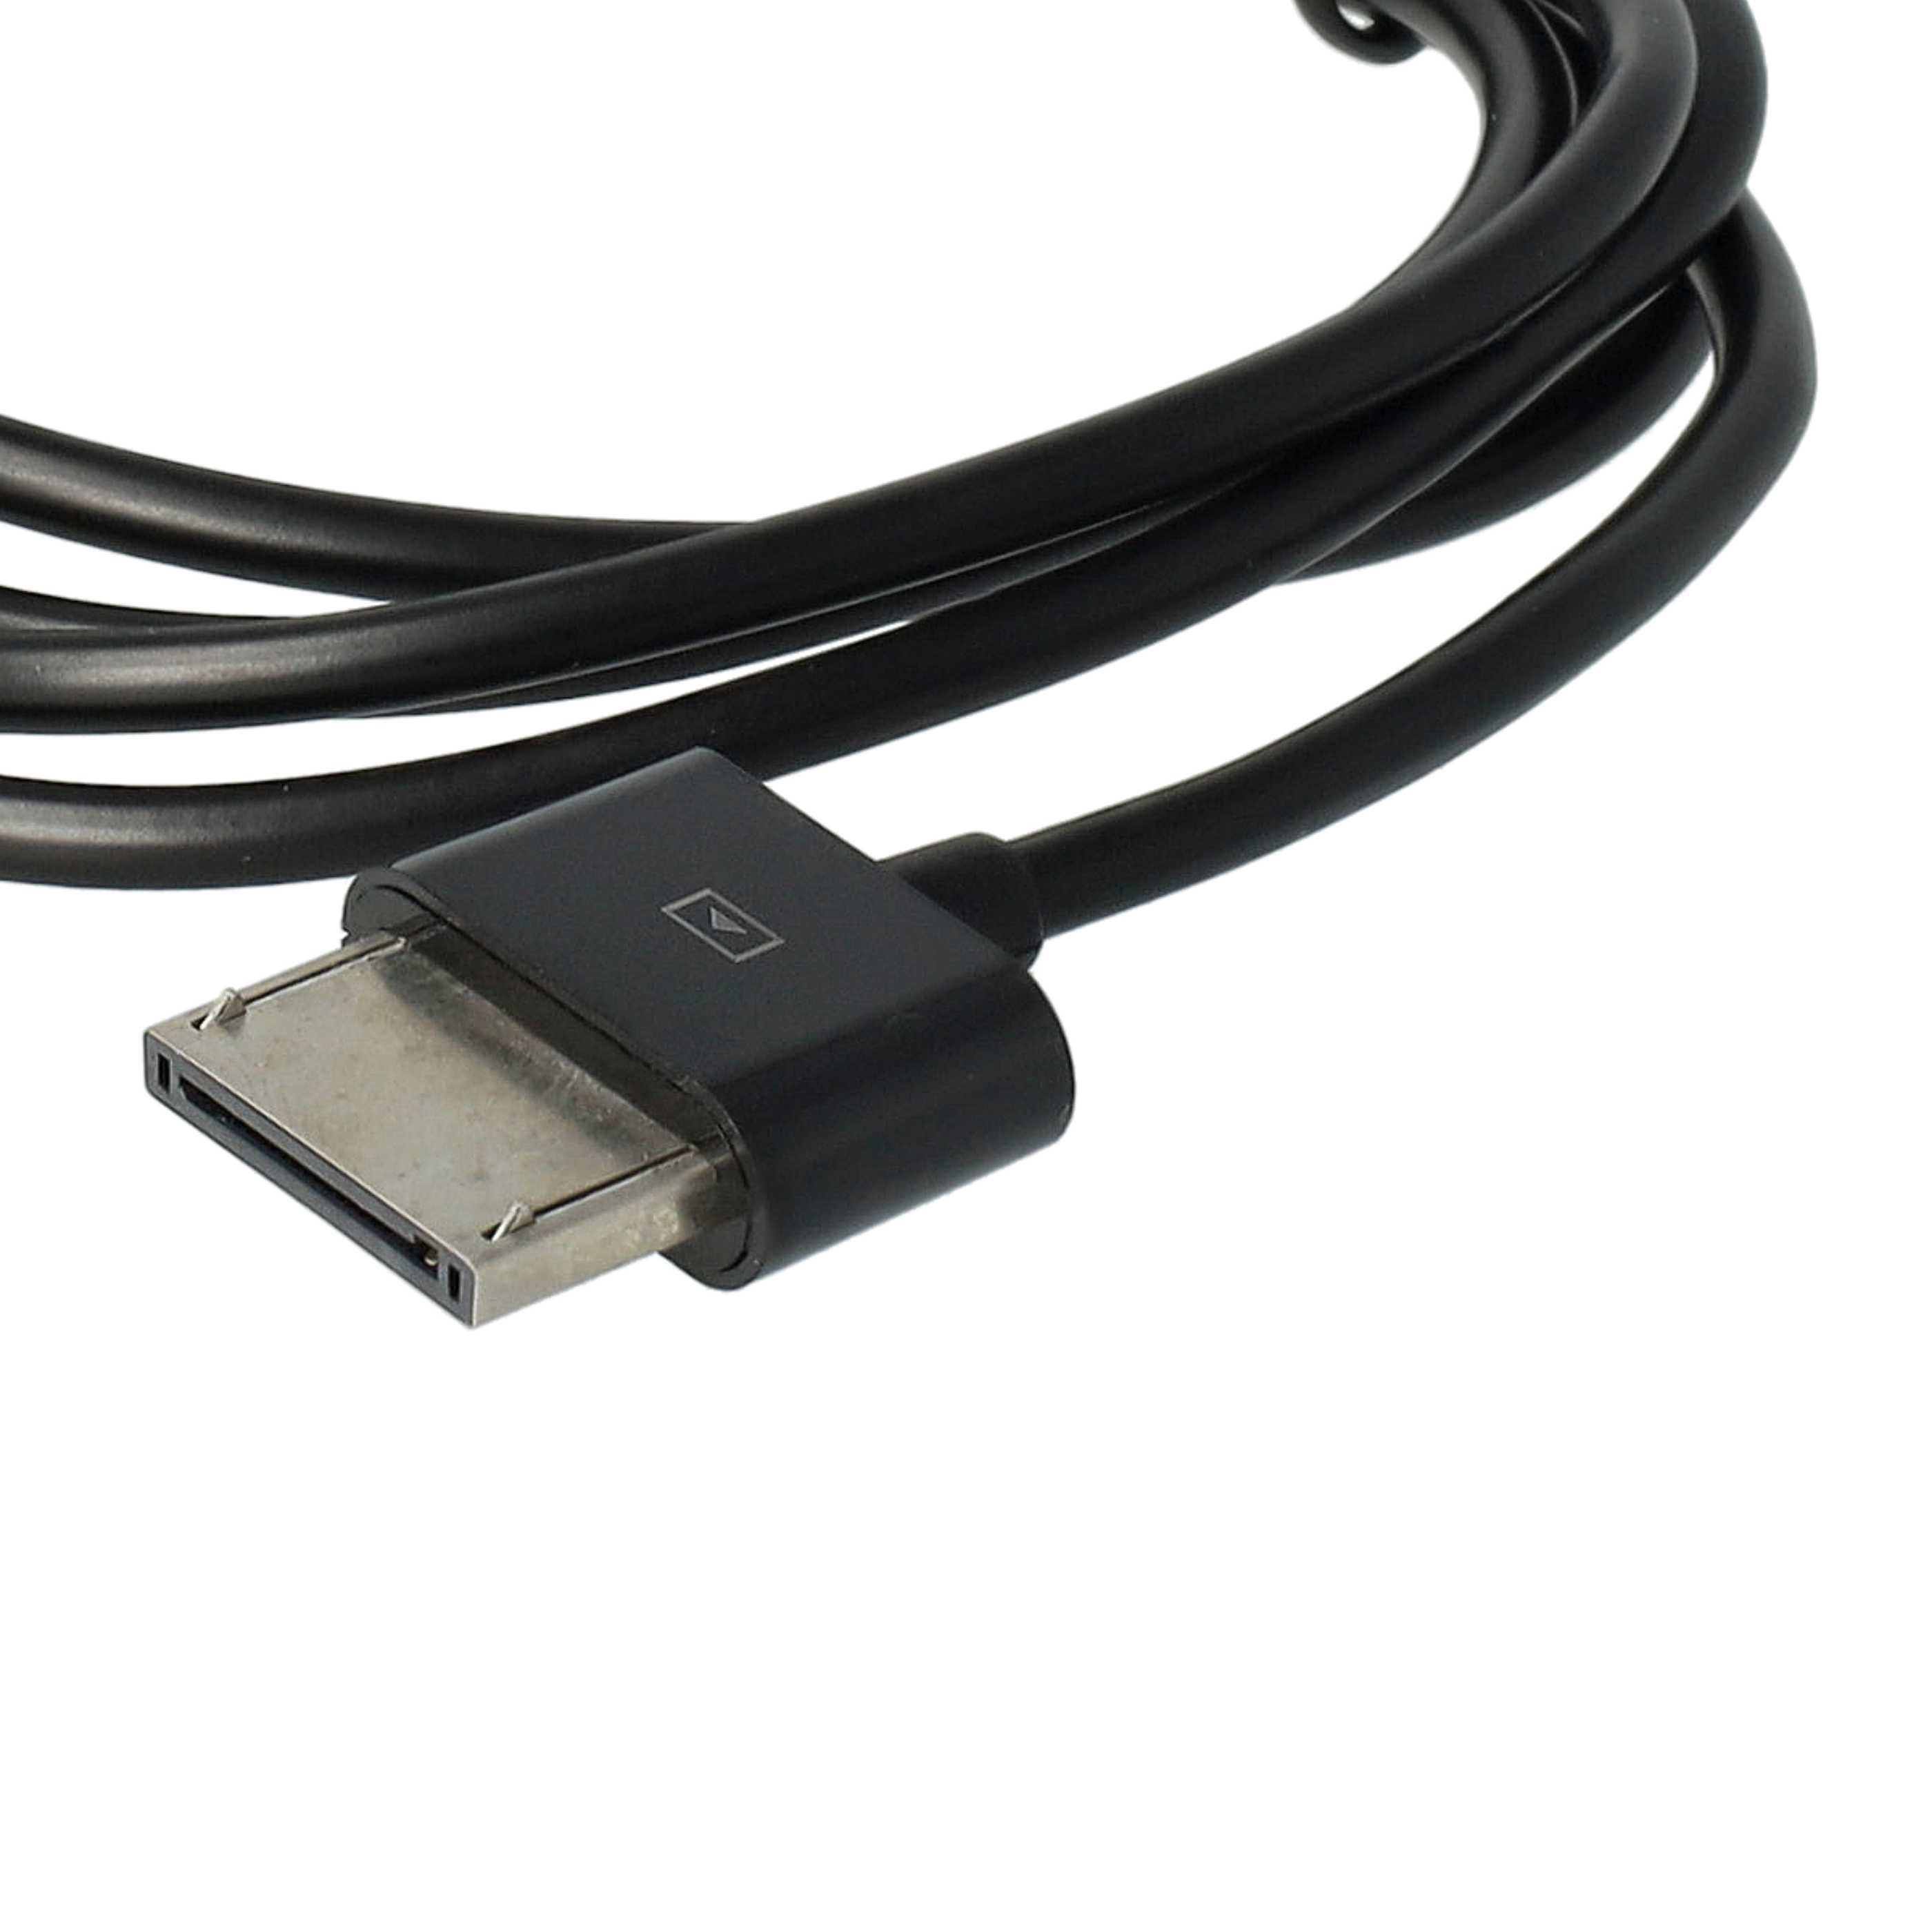 Cable de datos USB para tablet Asus Transformer Pad Infinity - cable de carga 2en1, 100cm